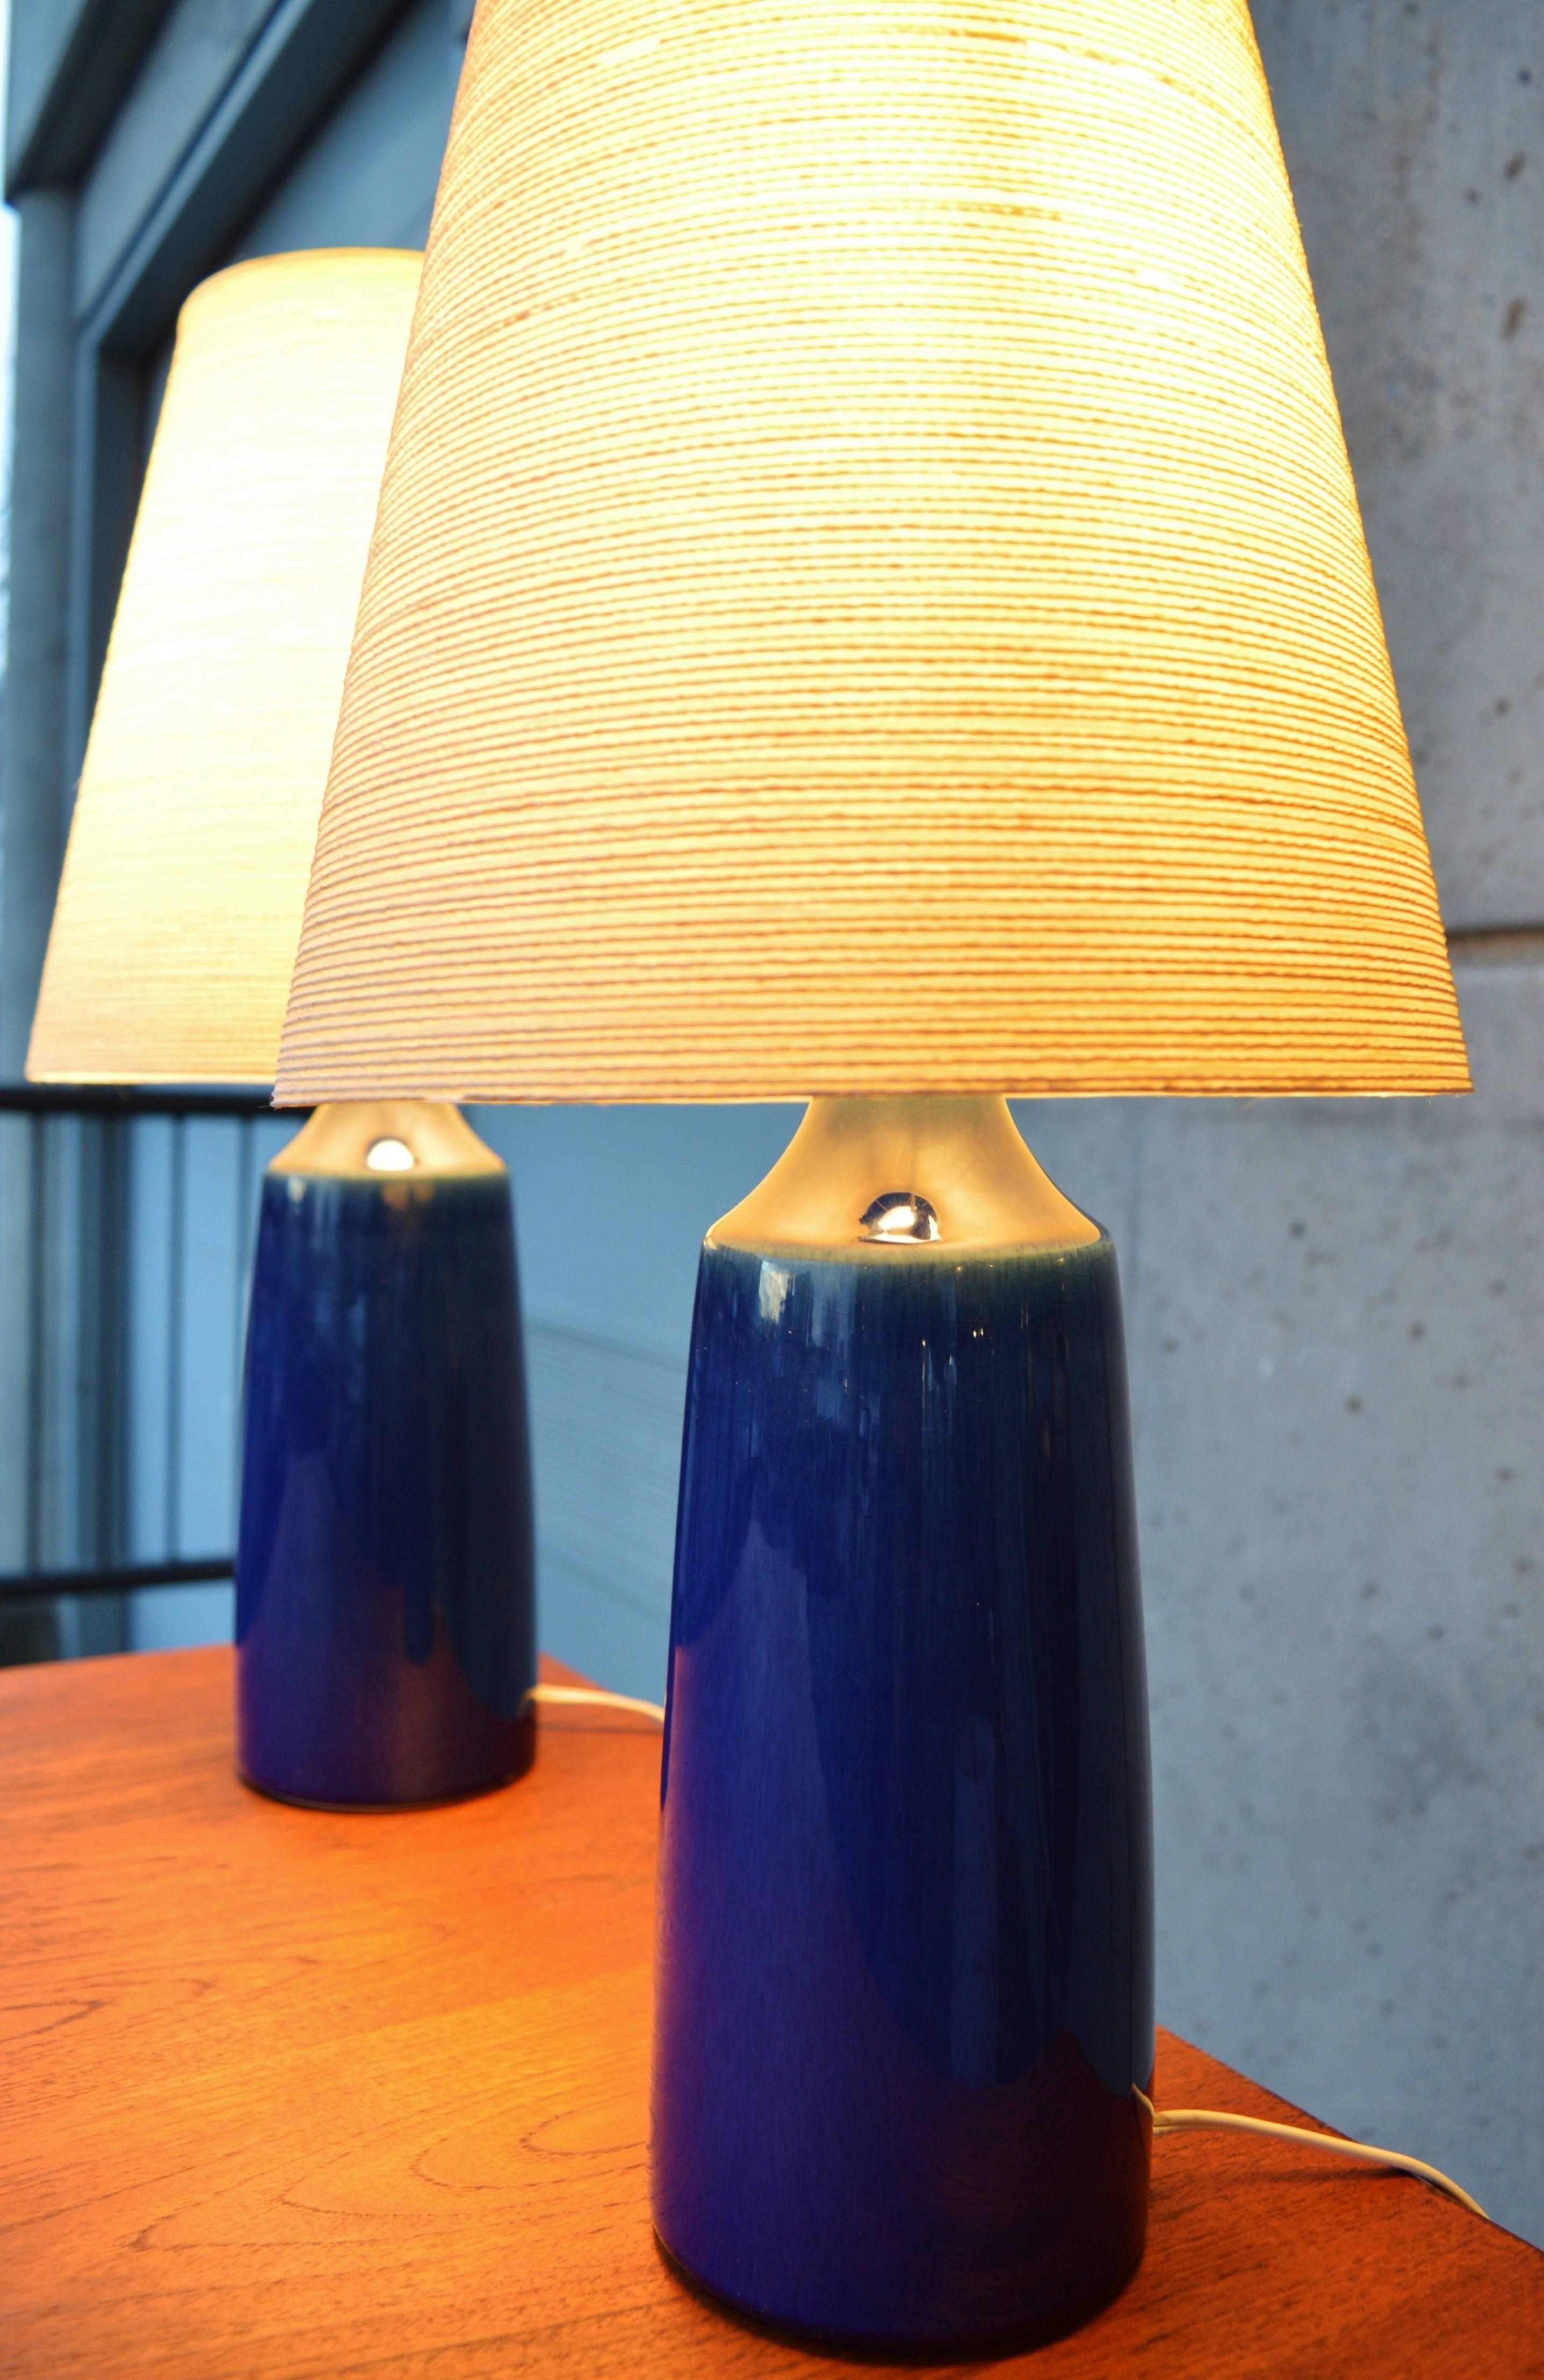 Ceramic Hot Pair Cobalt Blue Lotte Lamps Original Shades